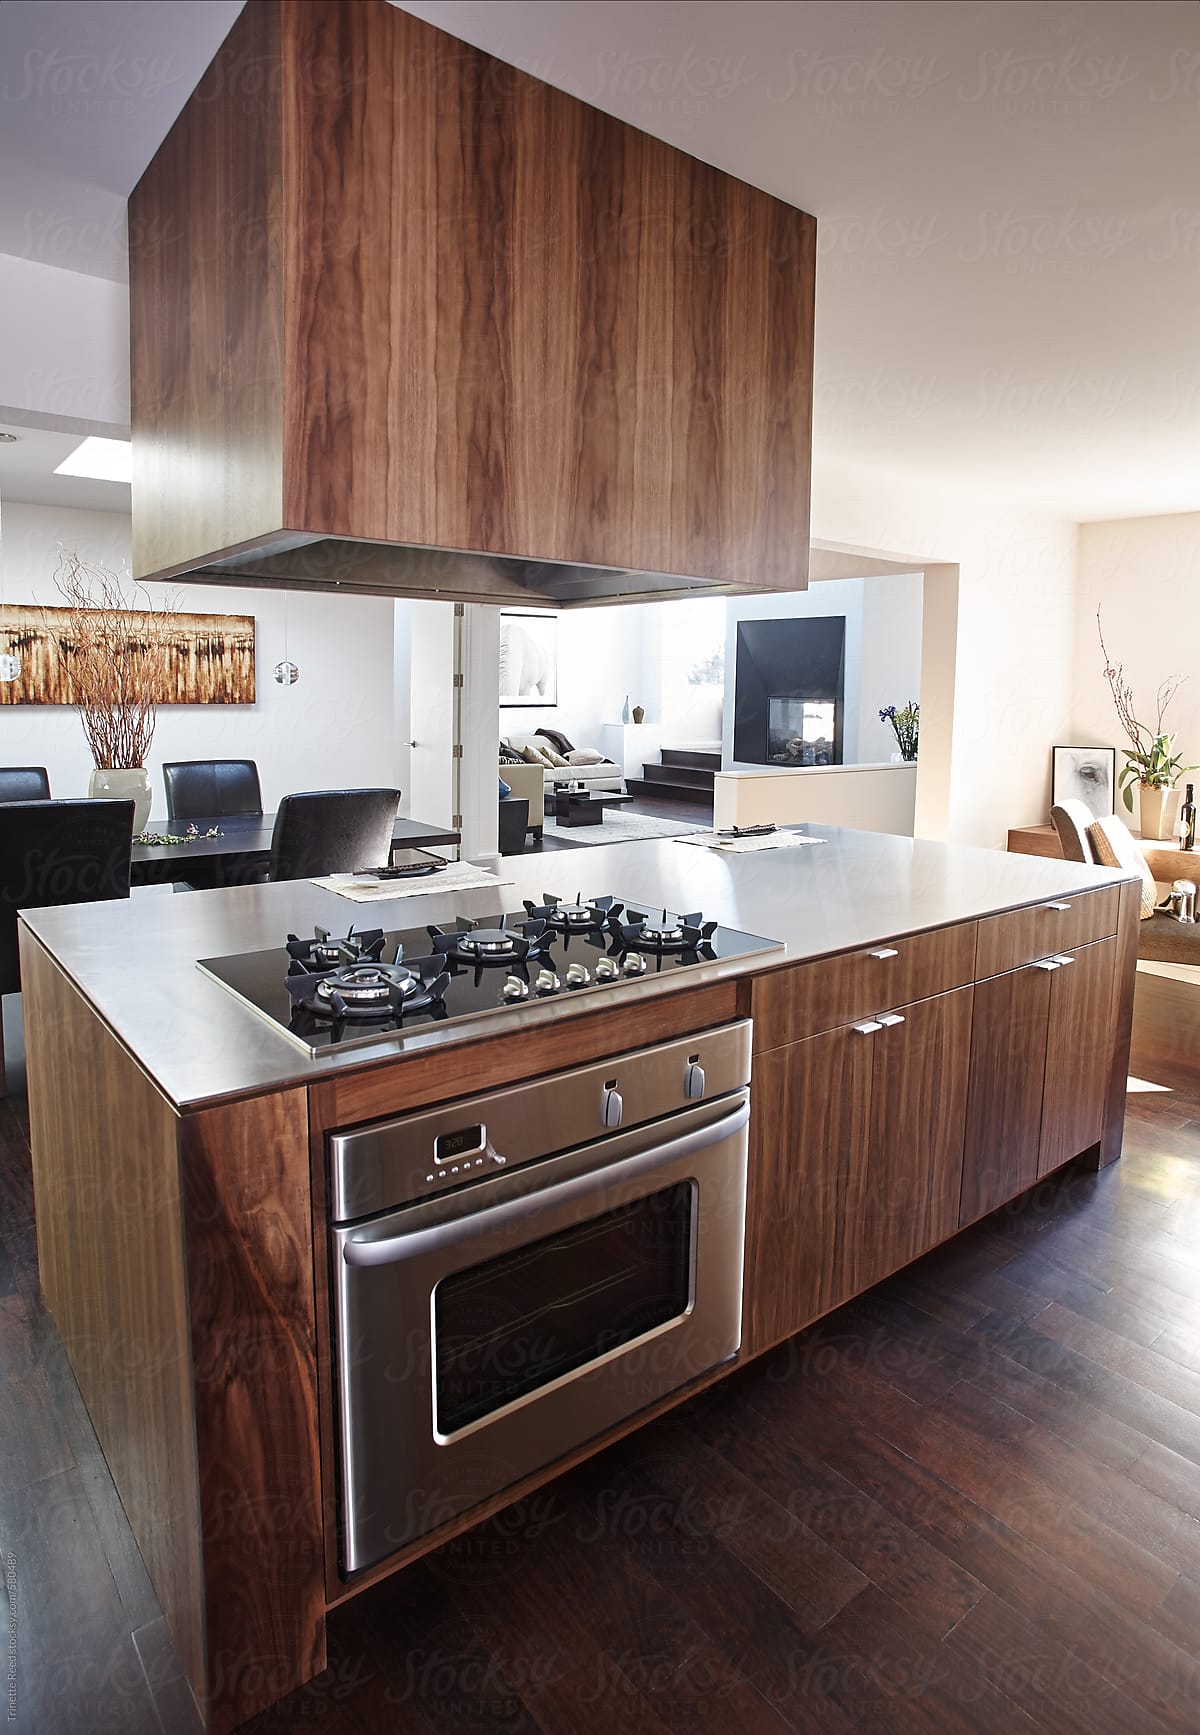 Modern Design kitchen in luxury custom home,